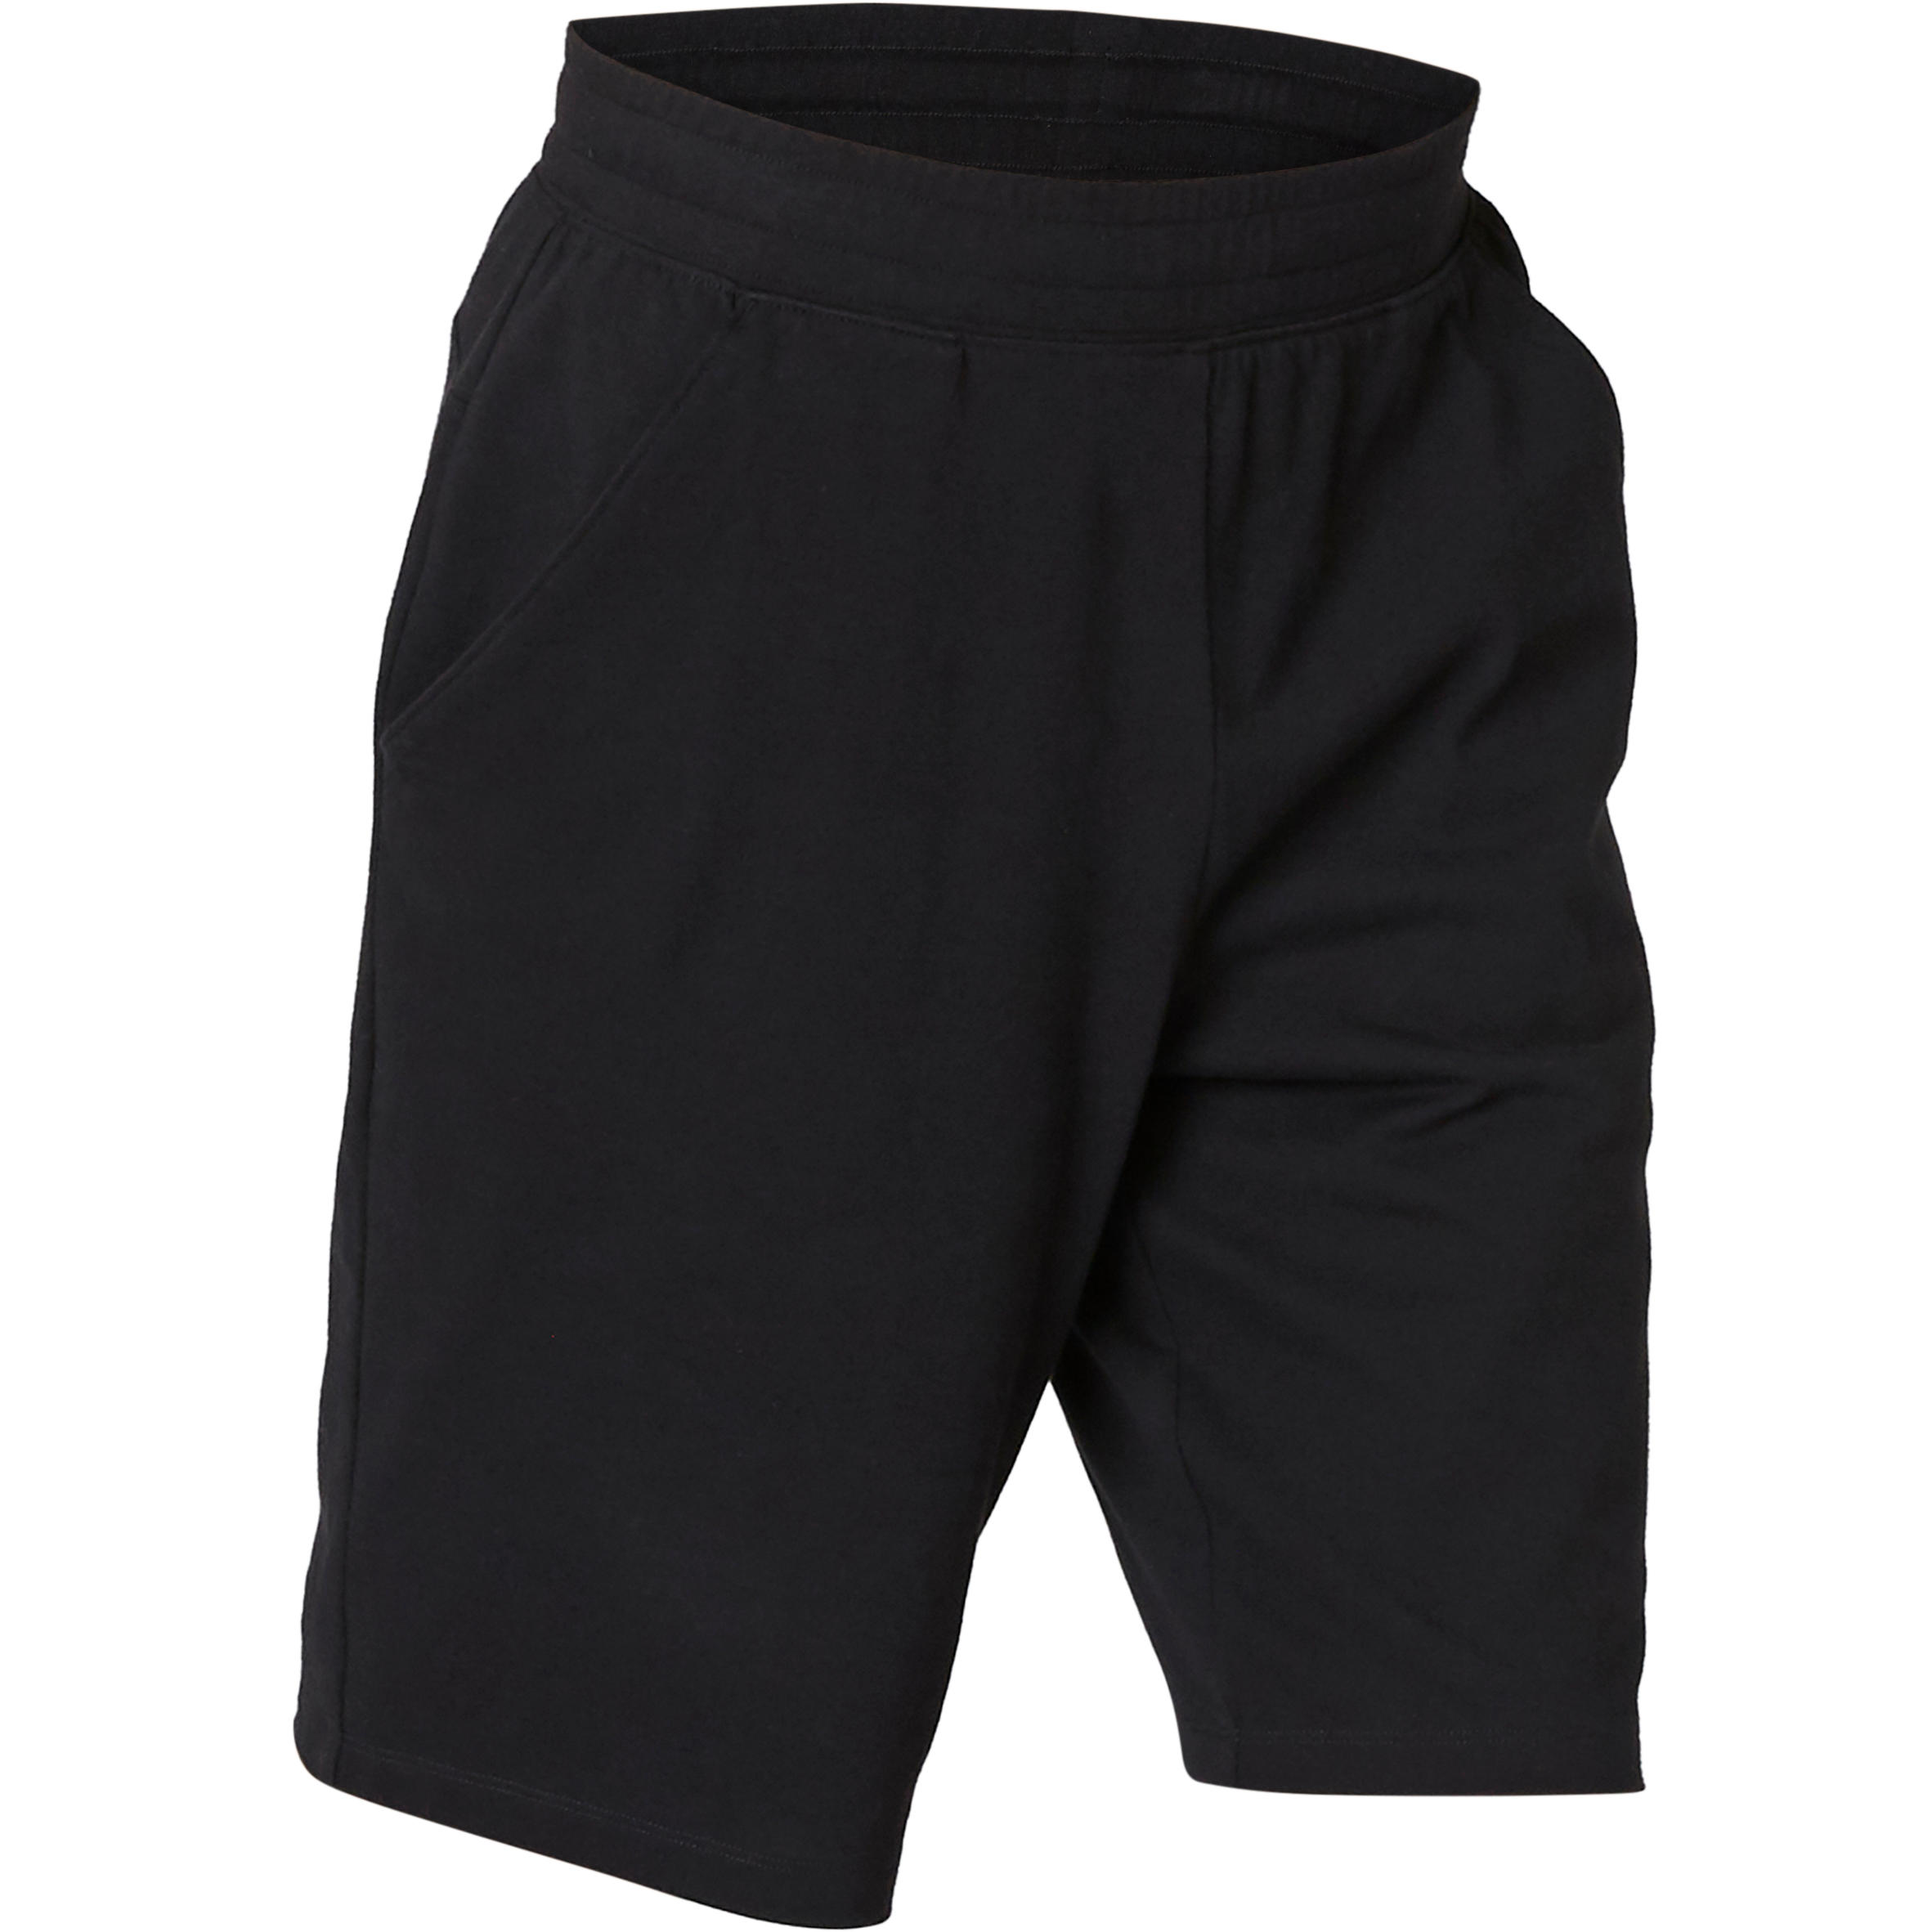 shorts for men under 500